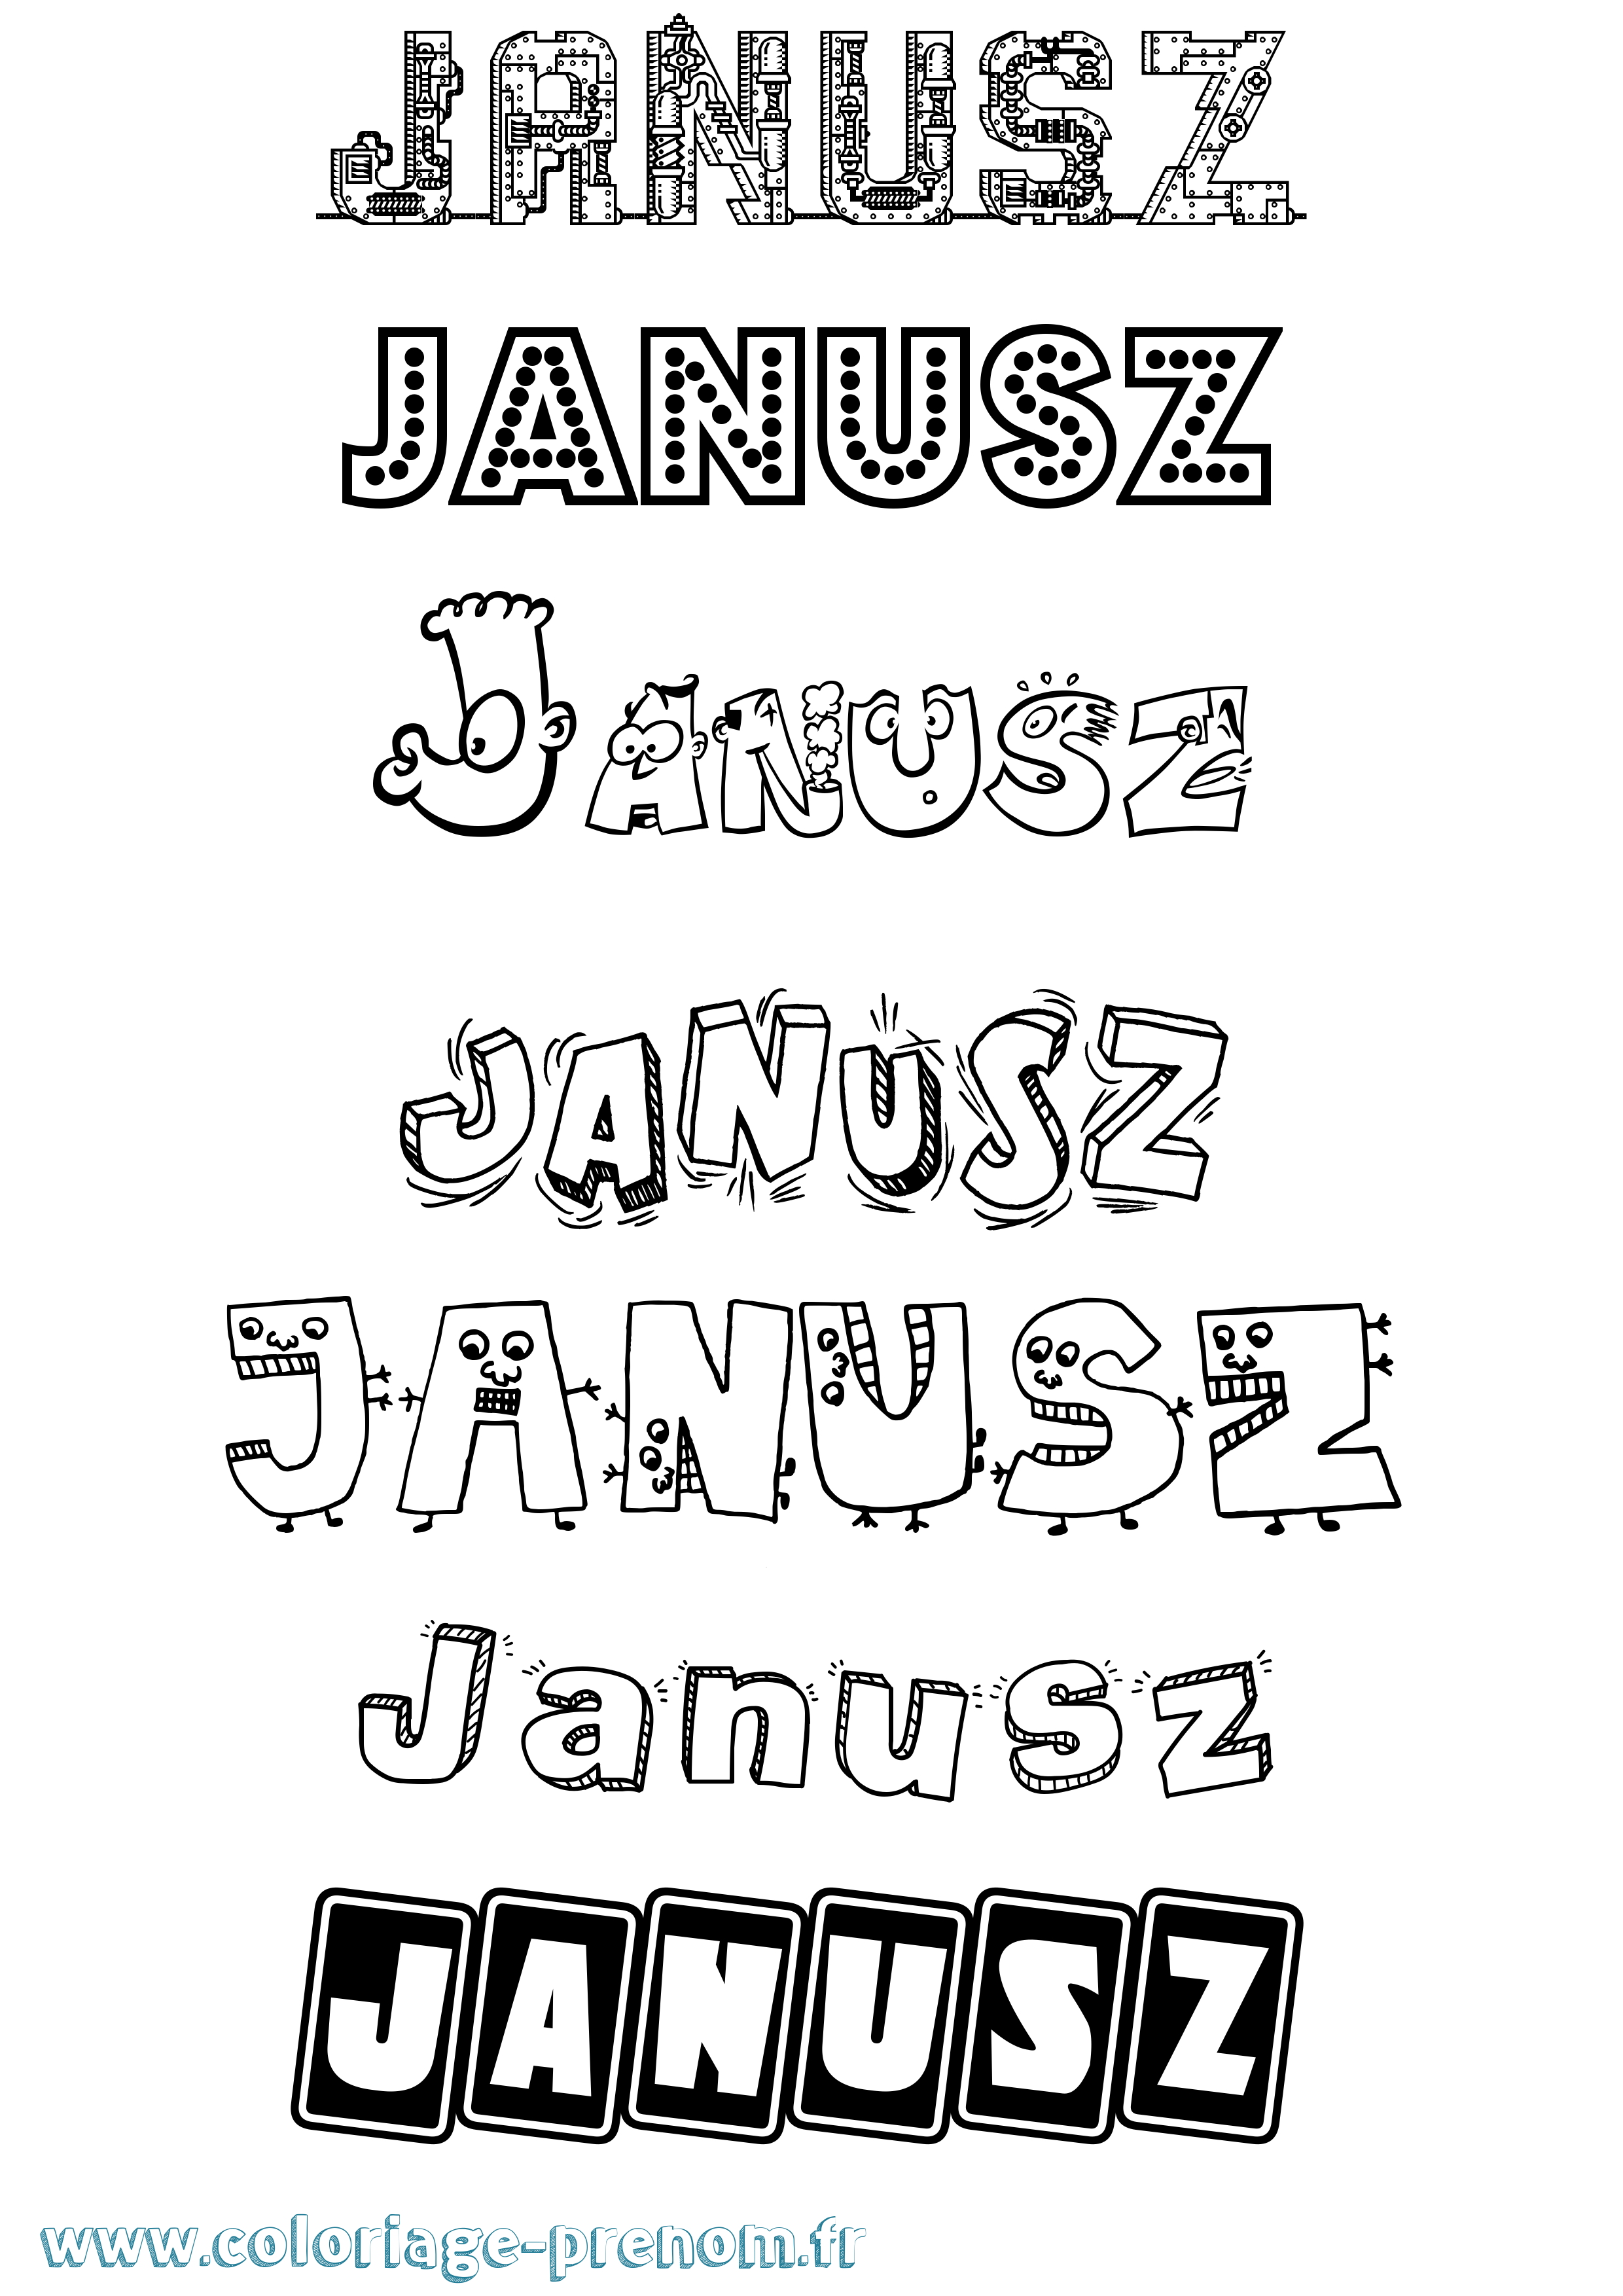 Coloriage prénom Janusz Fun